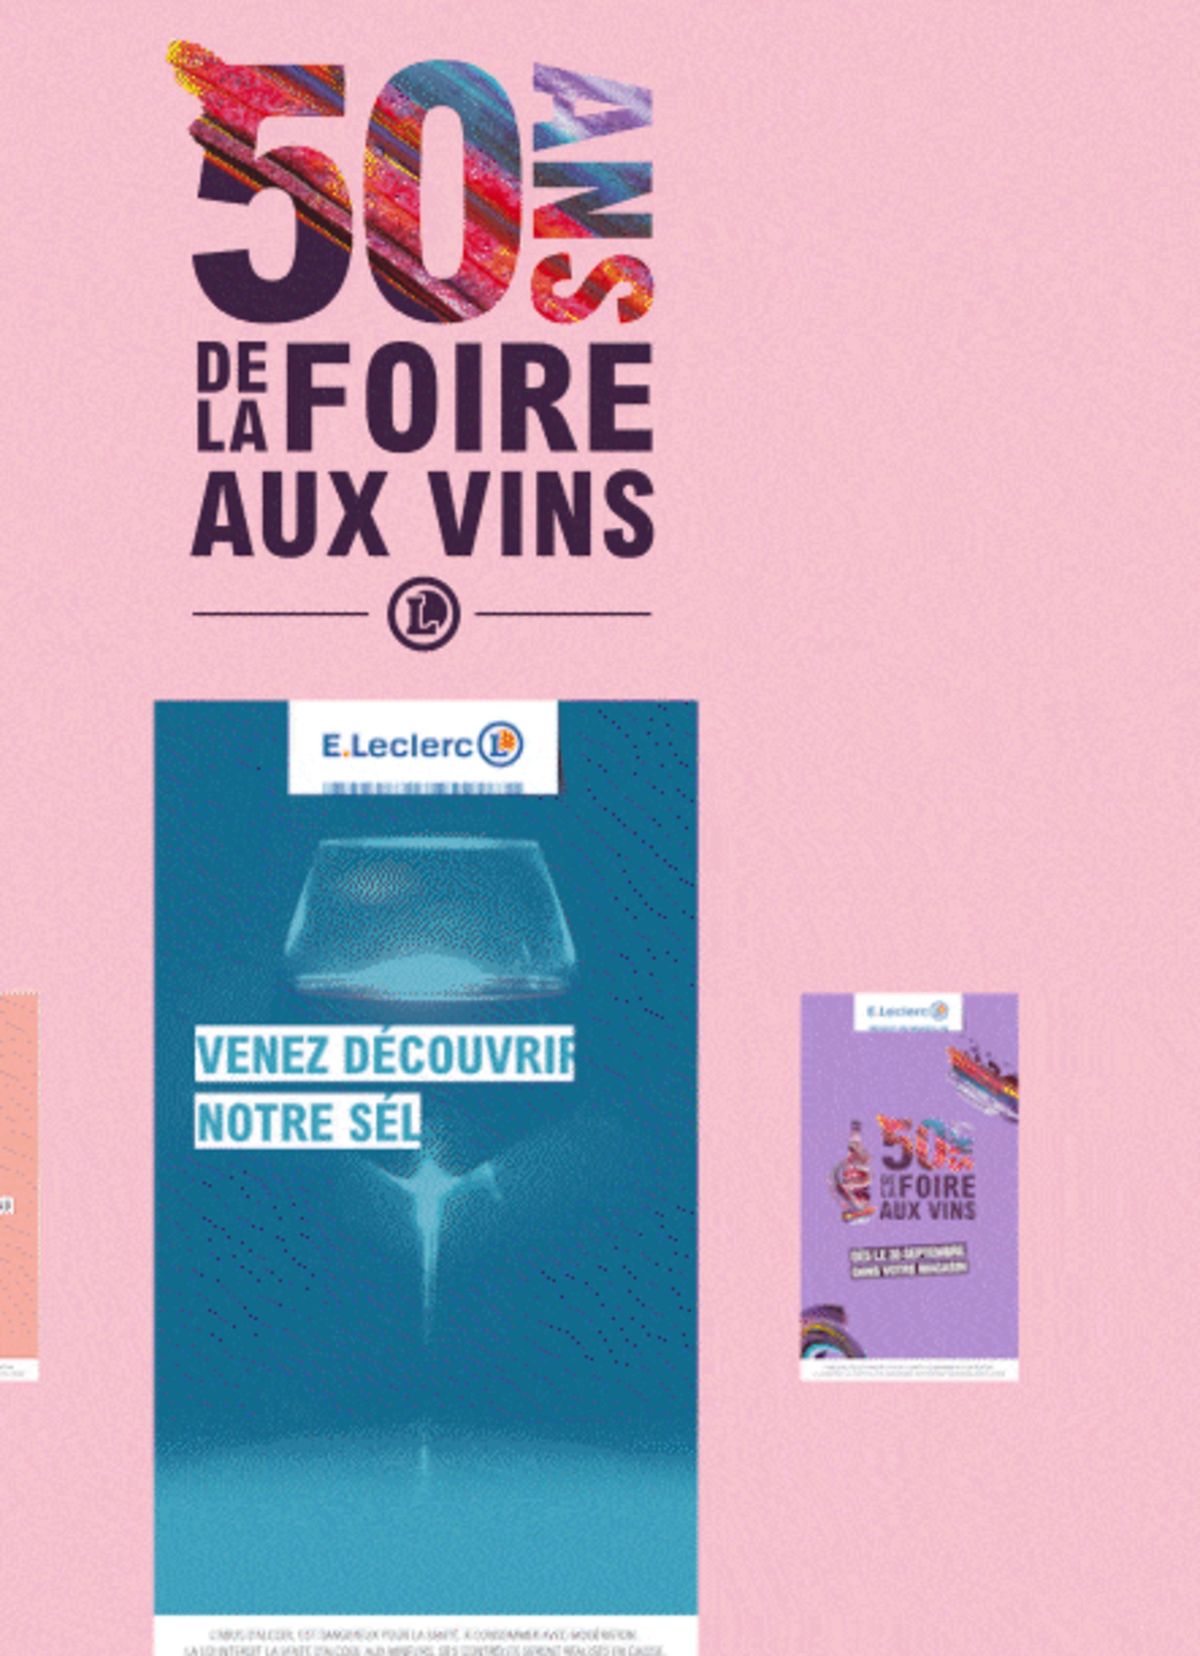 Catalogue Foire Aux Vins - Mixte, page 01389